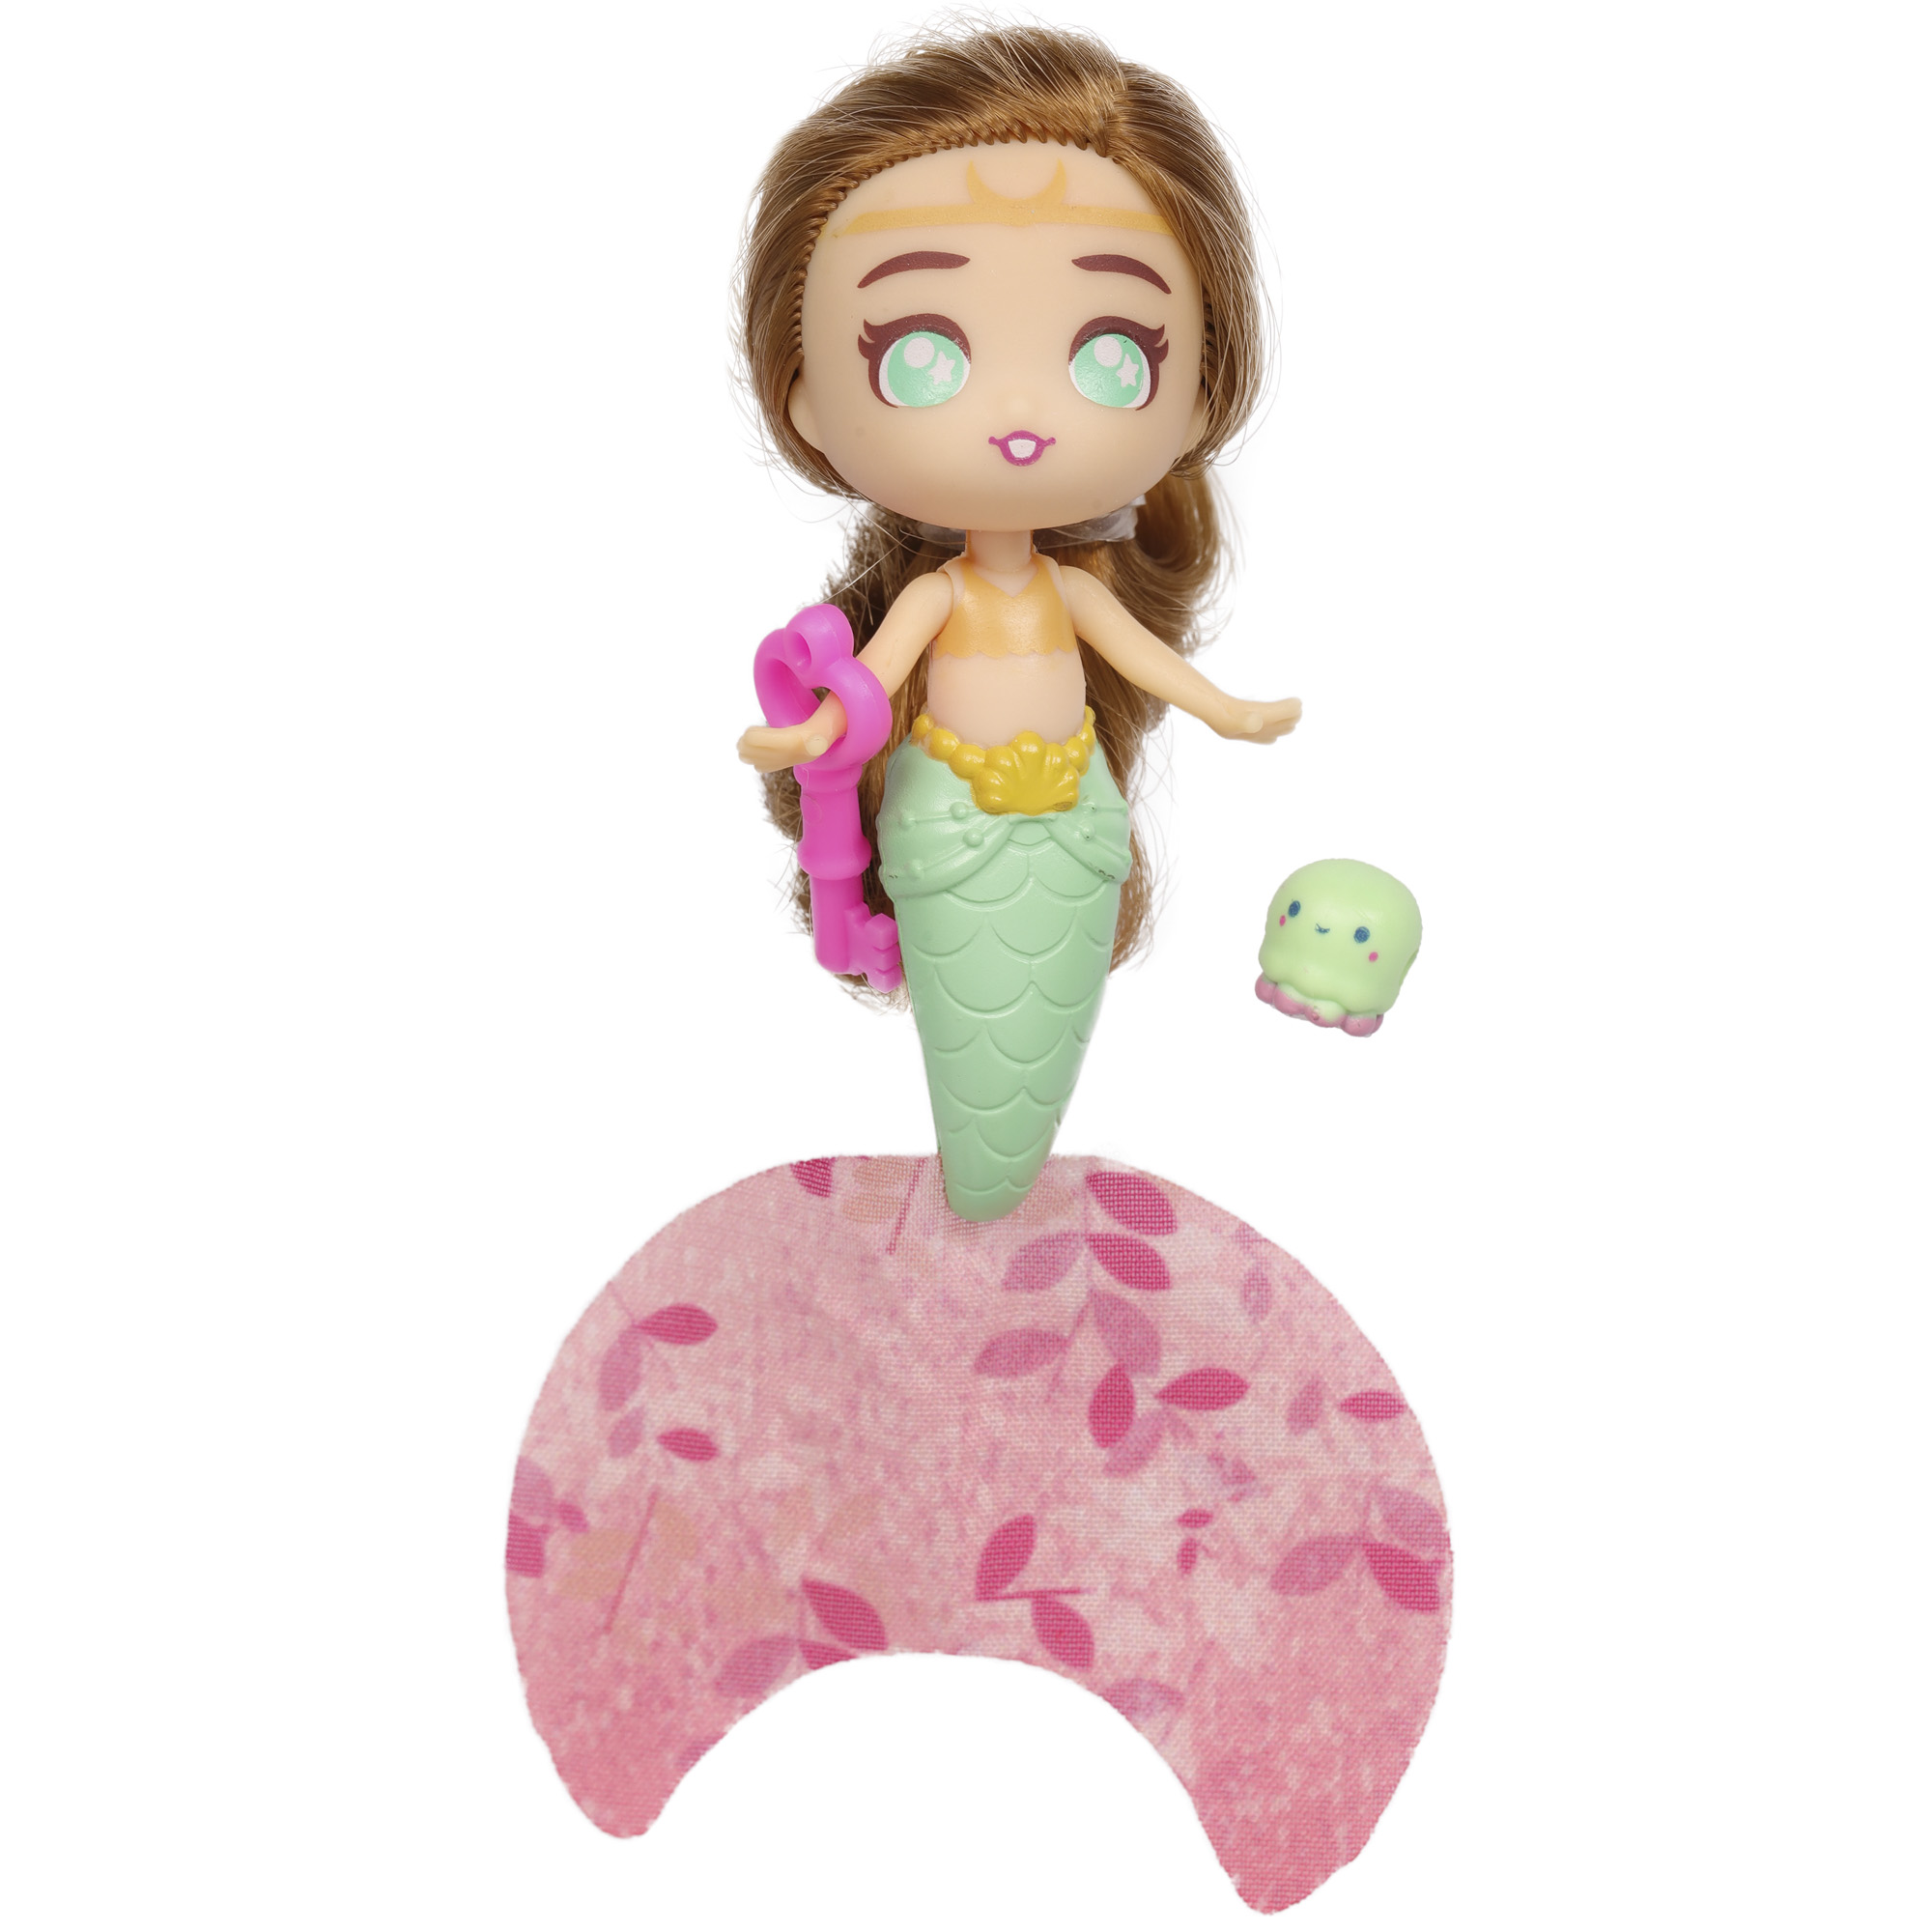 Кукла-сюрприз SEASTERS СиСтерс Принцесса русалка Грейс набор с бассейном аксессуарами и питомцем EAT15800 - фото 10